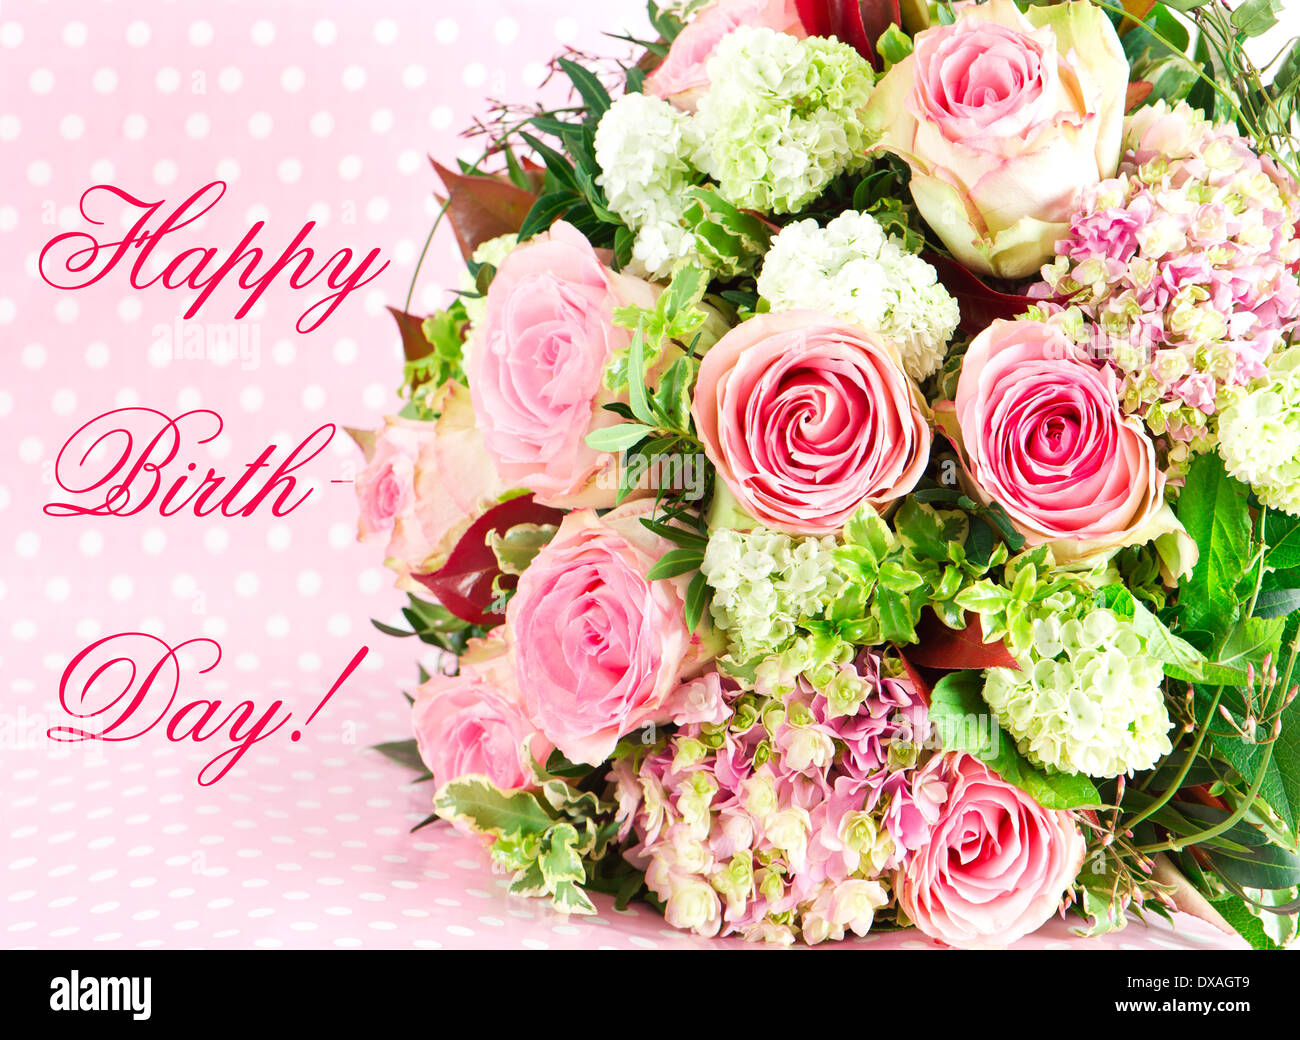 Herzlichen Glückwunsch zum Geburtstag! schöne Blumen Blumenstrauß  Stockfotografie - Alamy